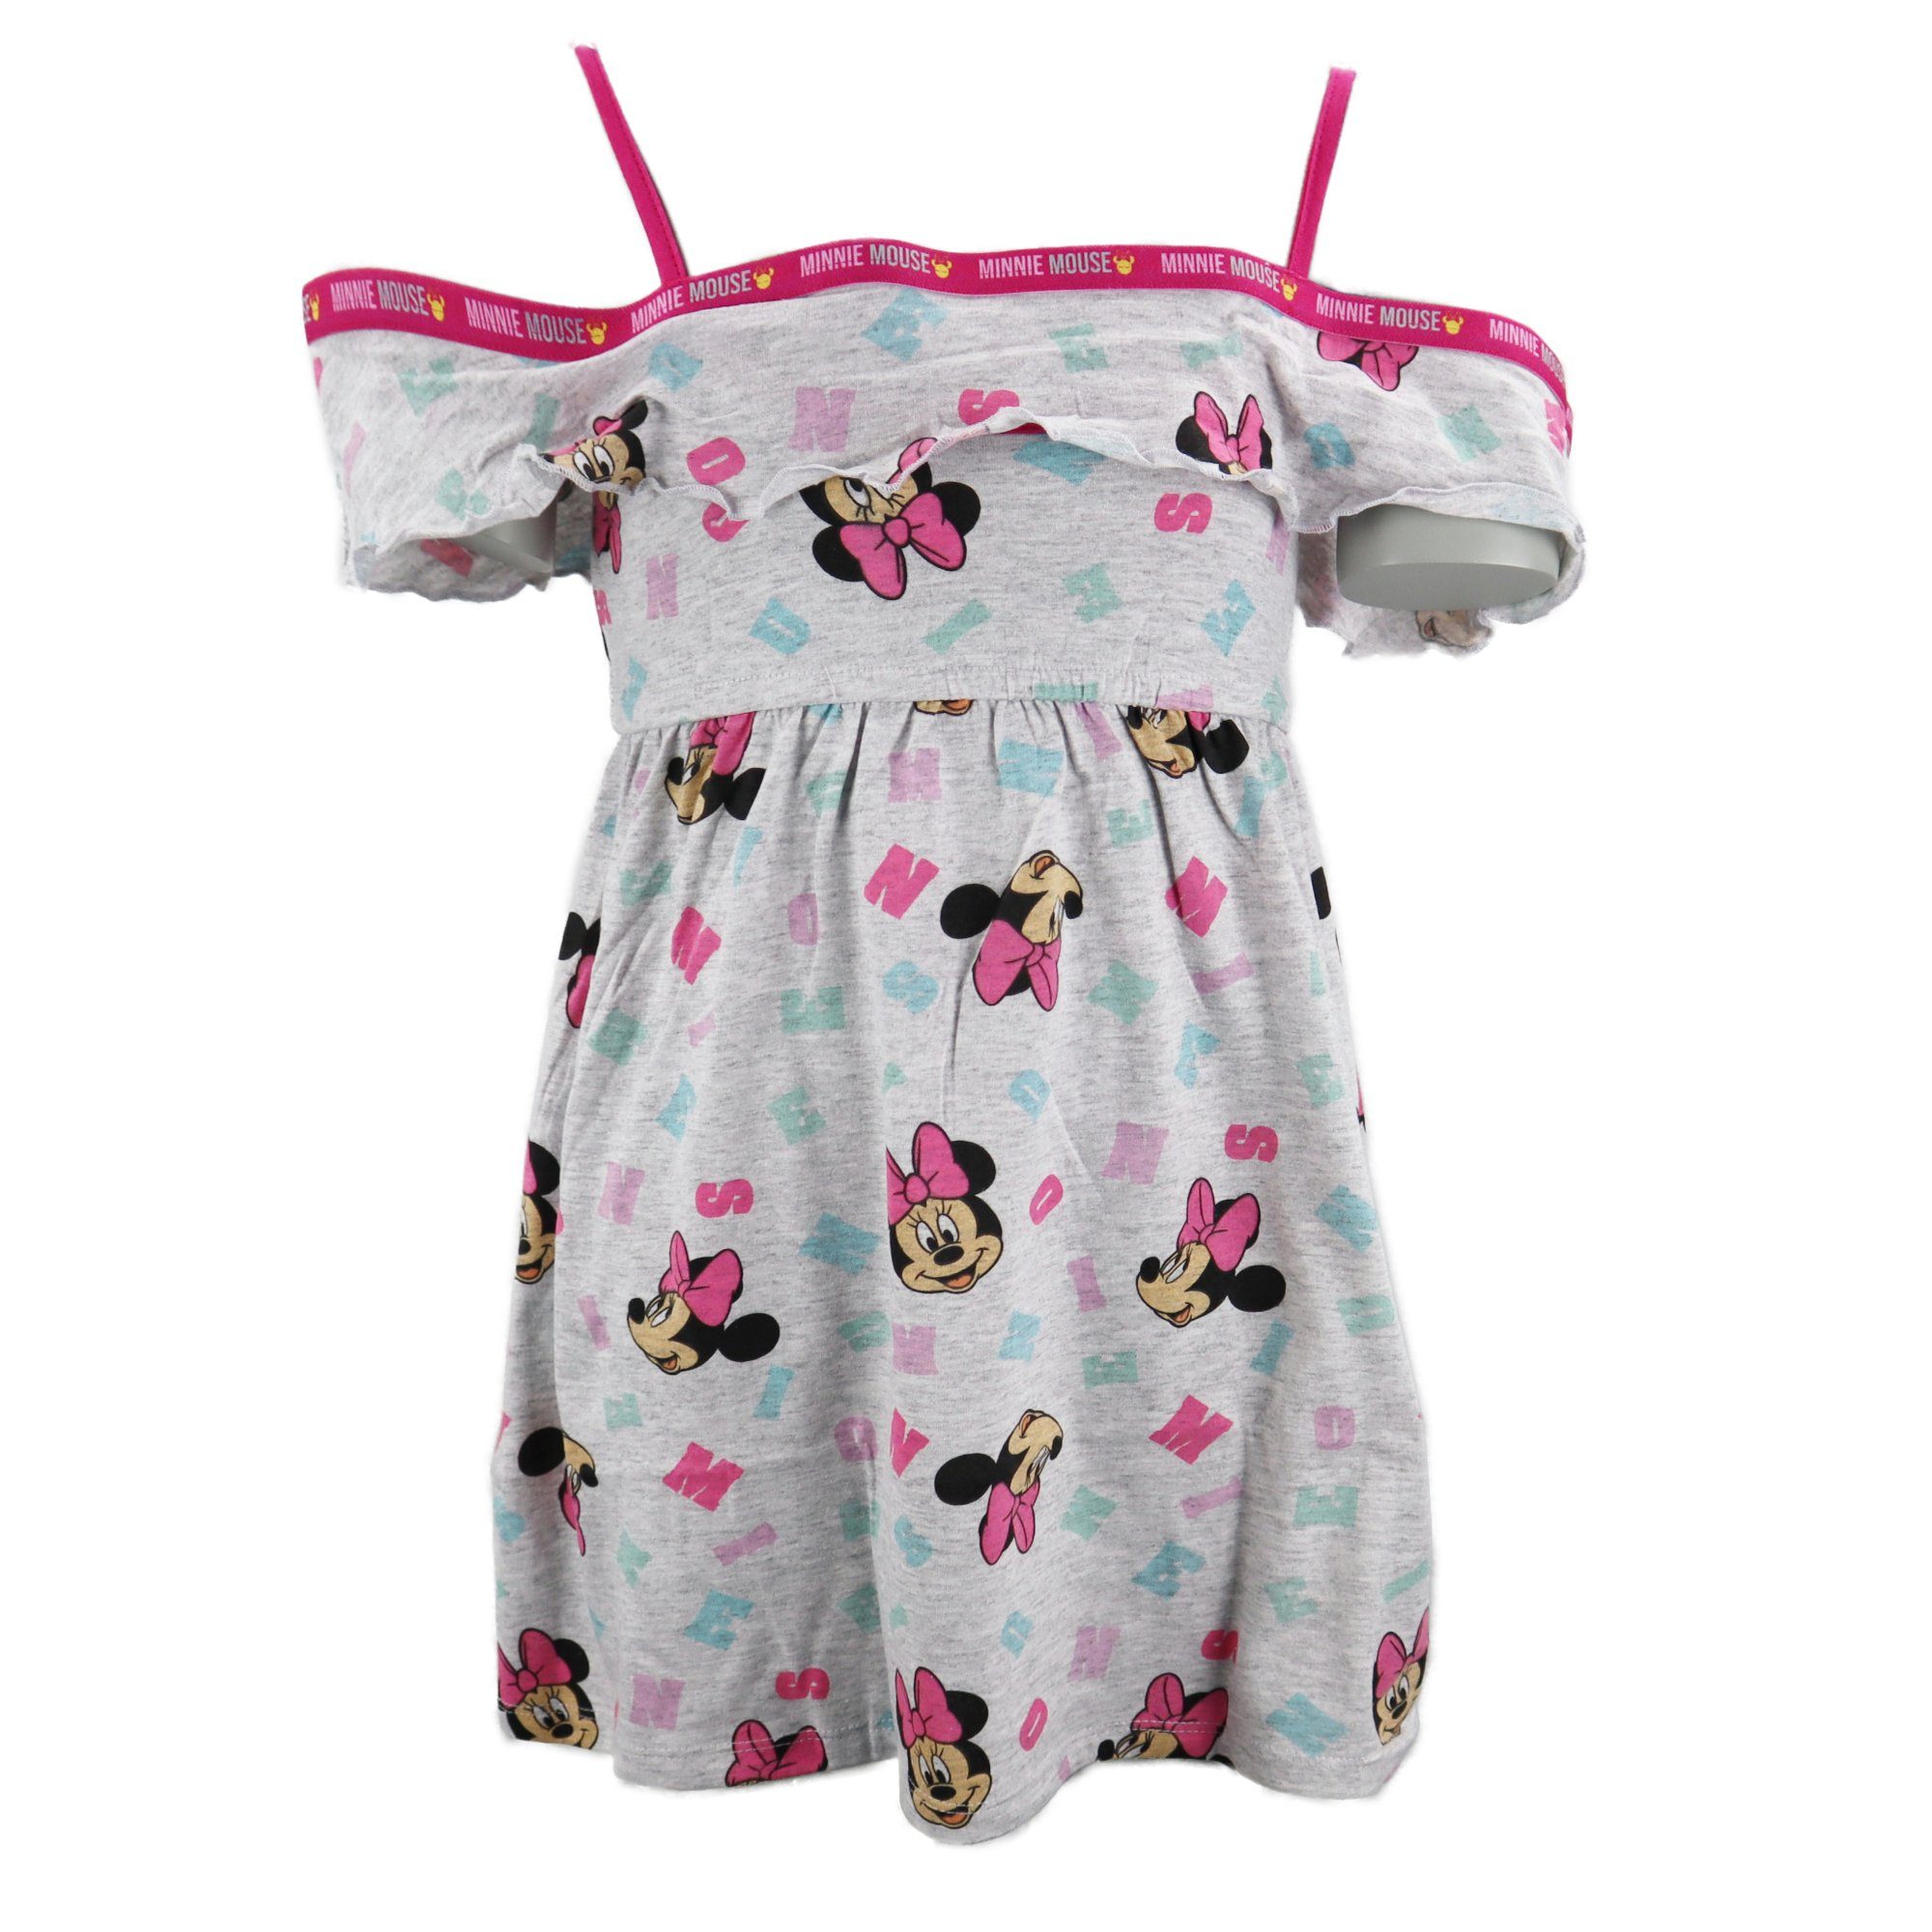 Disney Minnie Mouse Sommerkleid Disney Minnie Maus Kinder Mädchen kurzarm Kleid Gr. 104 bis 134 Grau